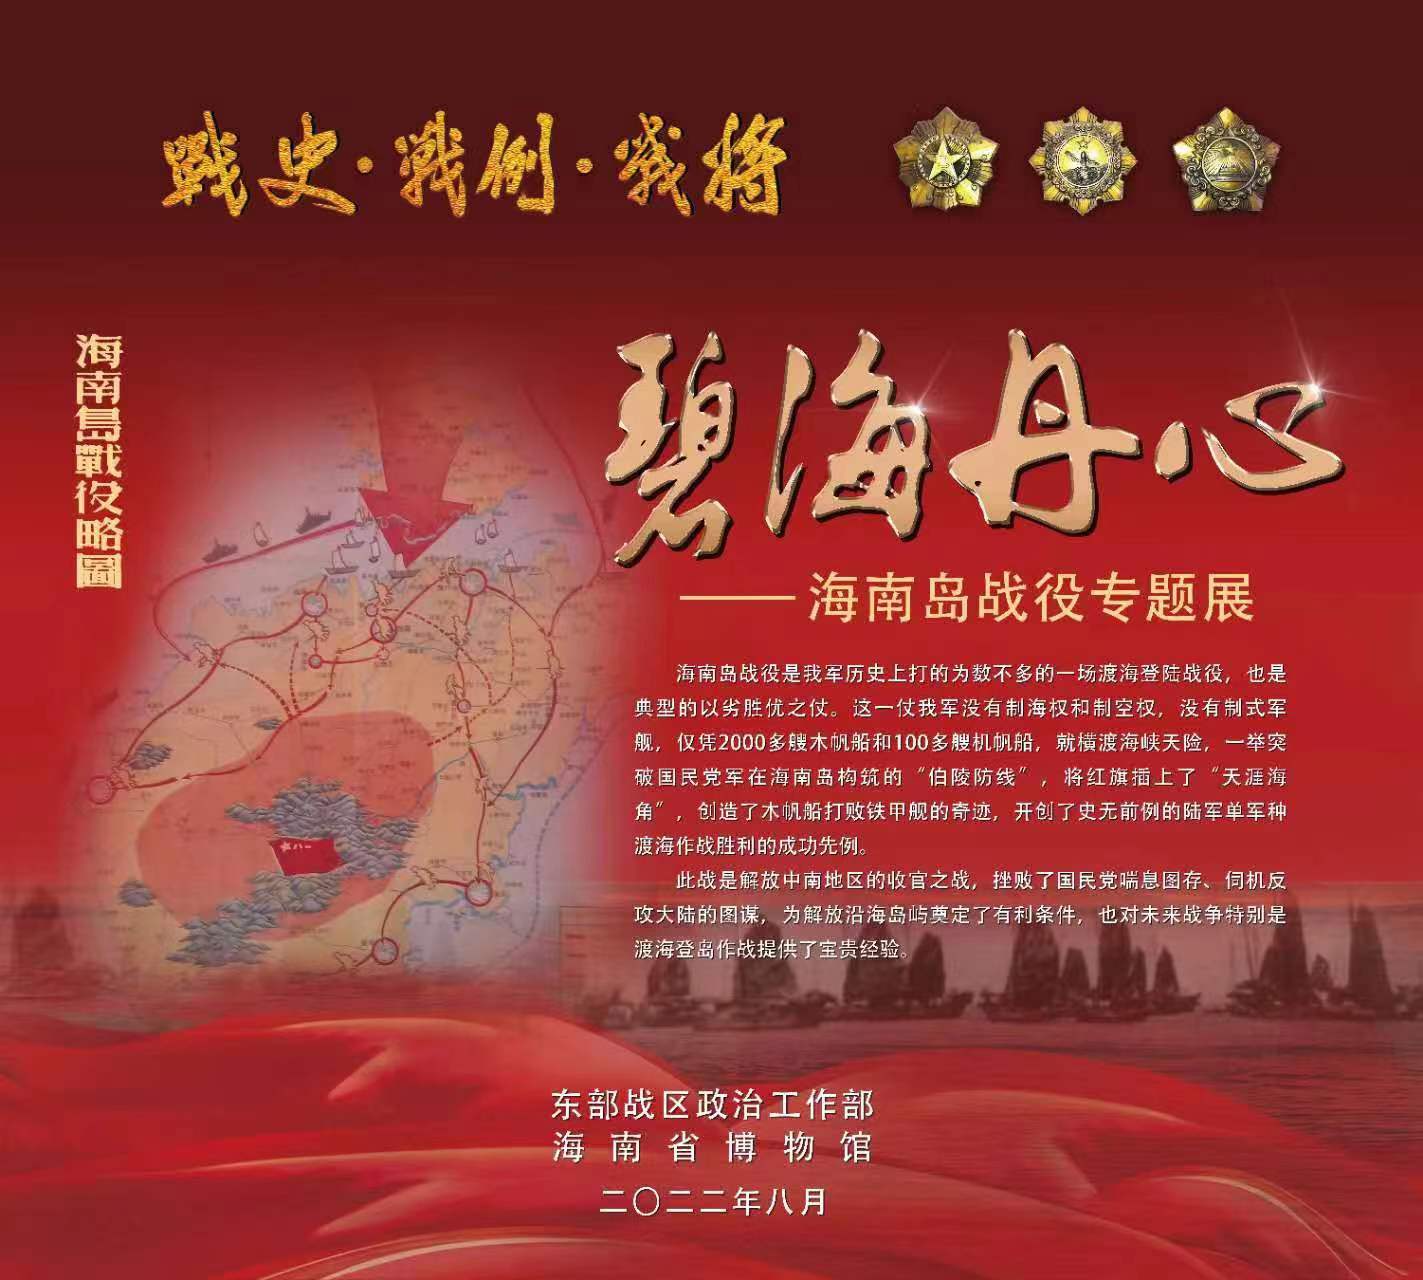 海南省博物馆与东部战区政治工作部联合举办“碧海丹心——海南岛战役专题展”。